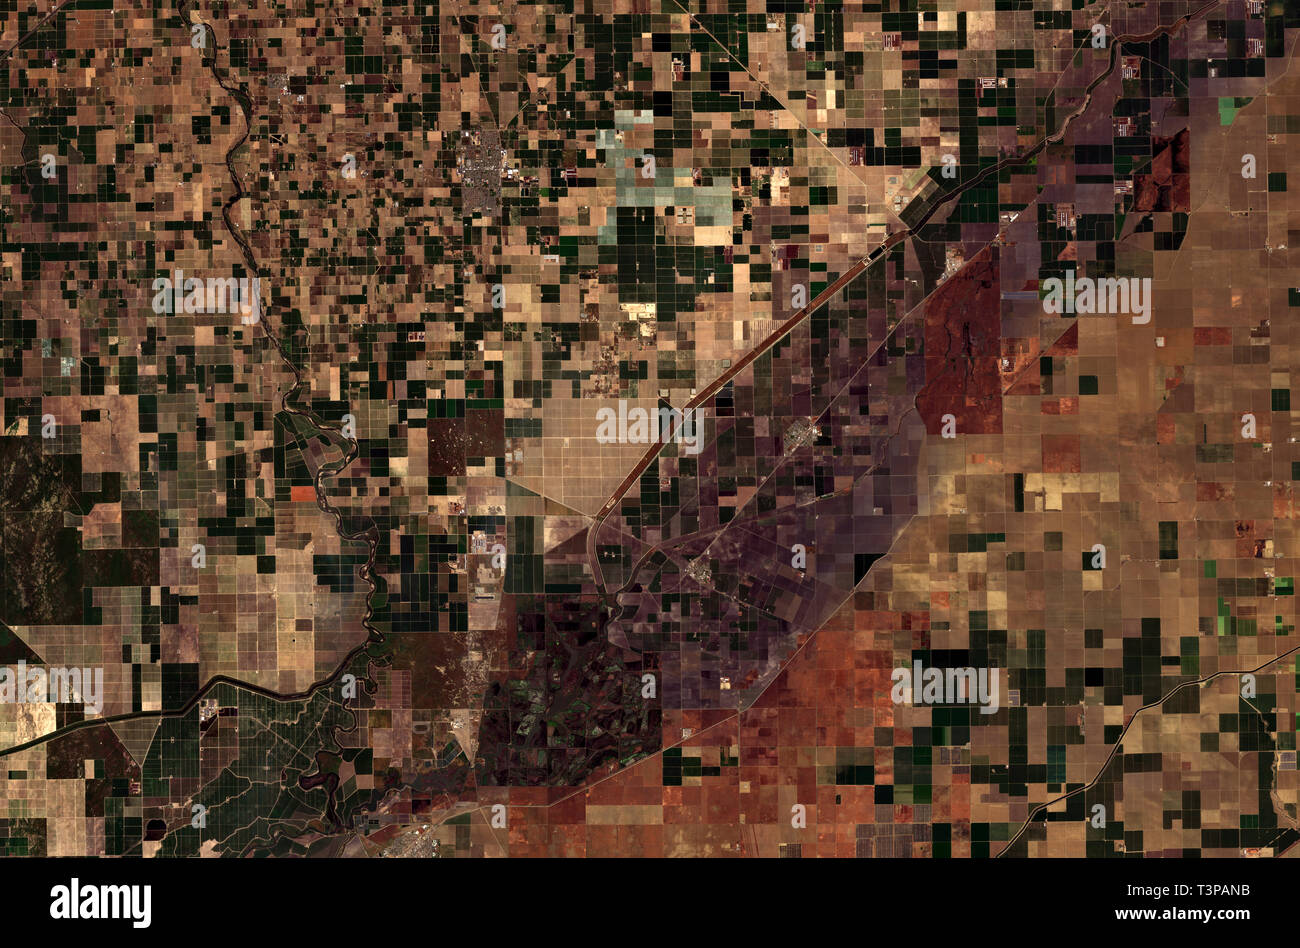 Landwirtschaftliche Muster in San Joaquin Valley in Kalifornien vom Weltraum aus gesehen - enthält geänderte Copernicus Sentinel Data (2019) Stockfoto